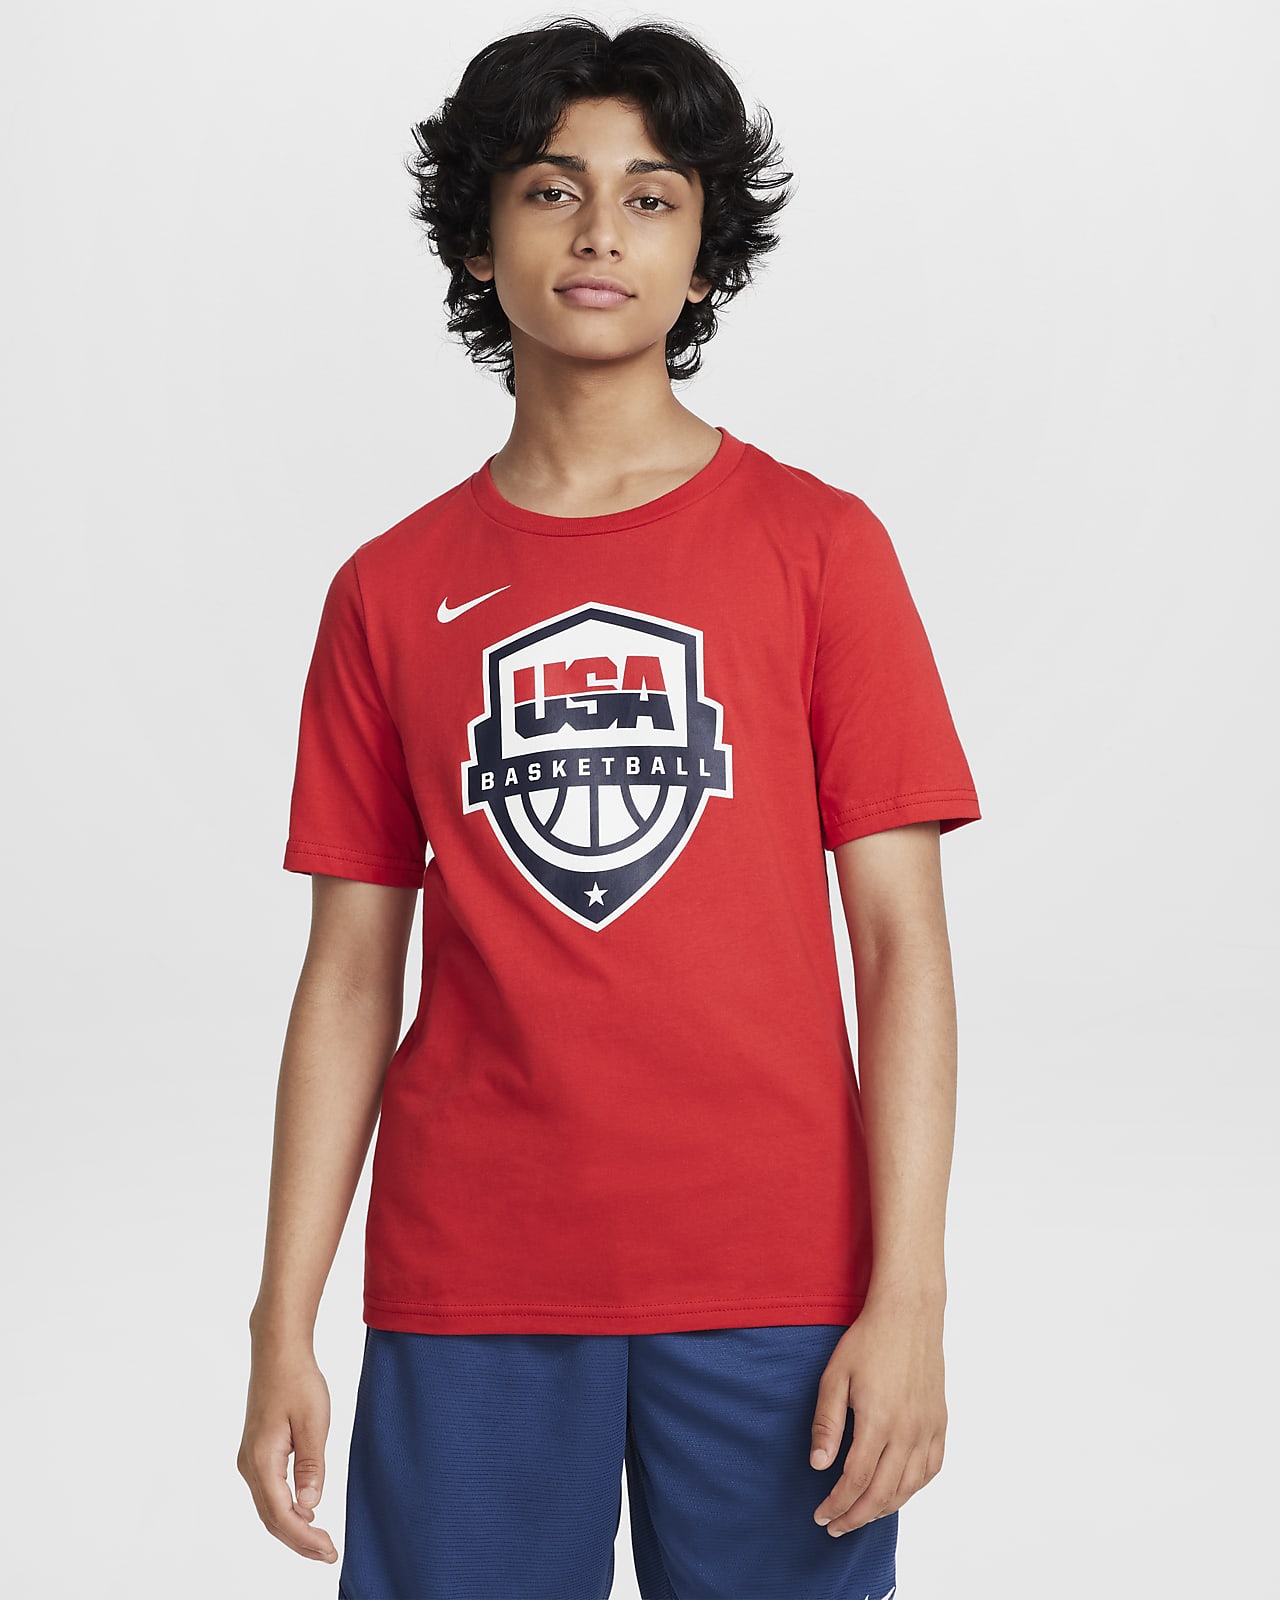 USAB Big Kids' Nike Basketball T-Shirt